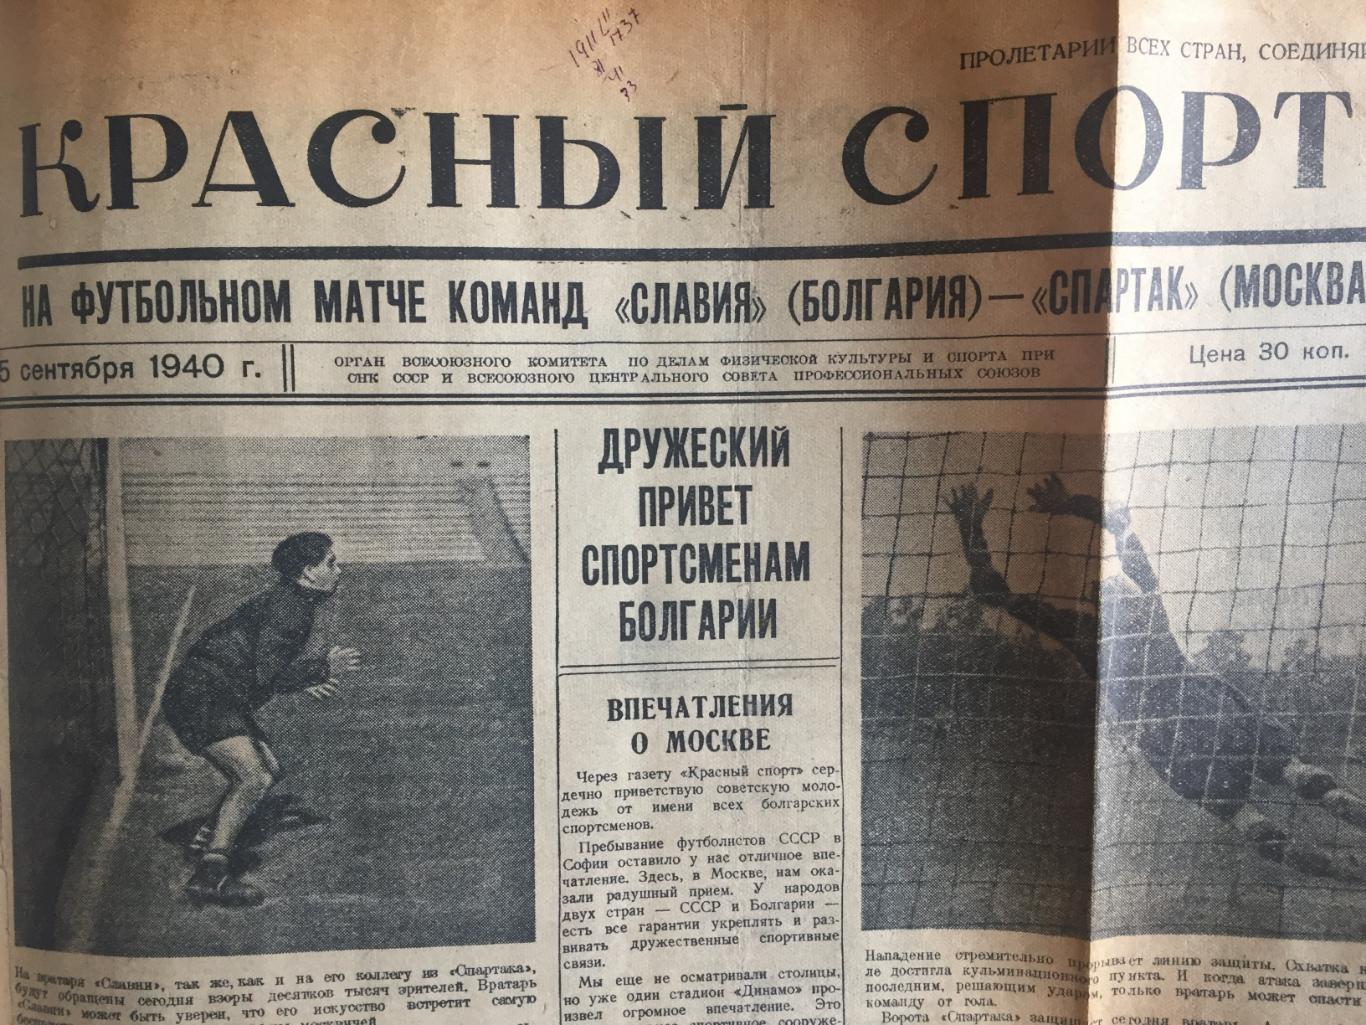 Спартак Москва - Славия Болгария 15.09.1940 Красный спорт 1